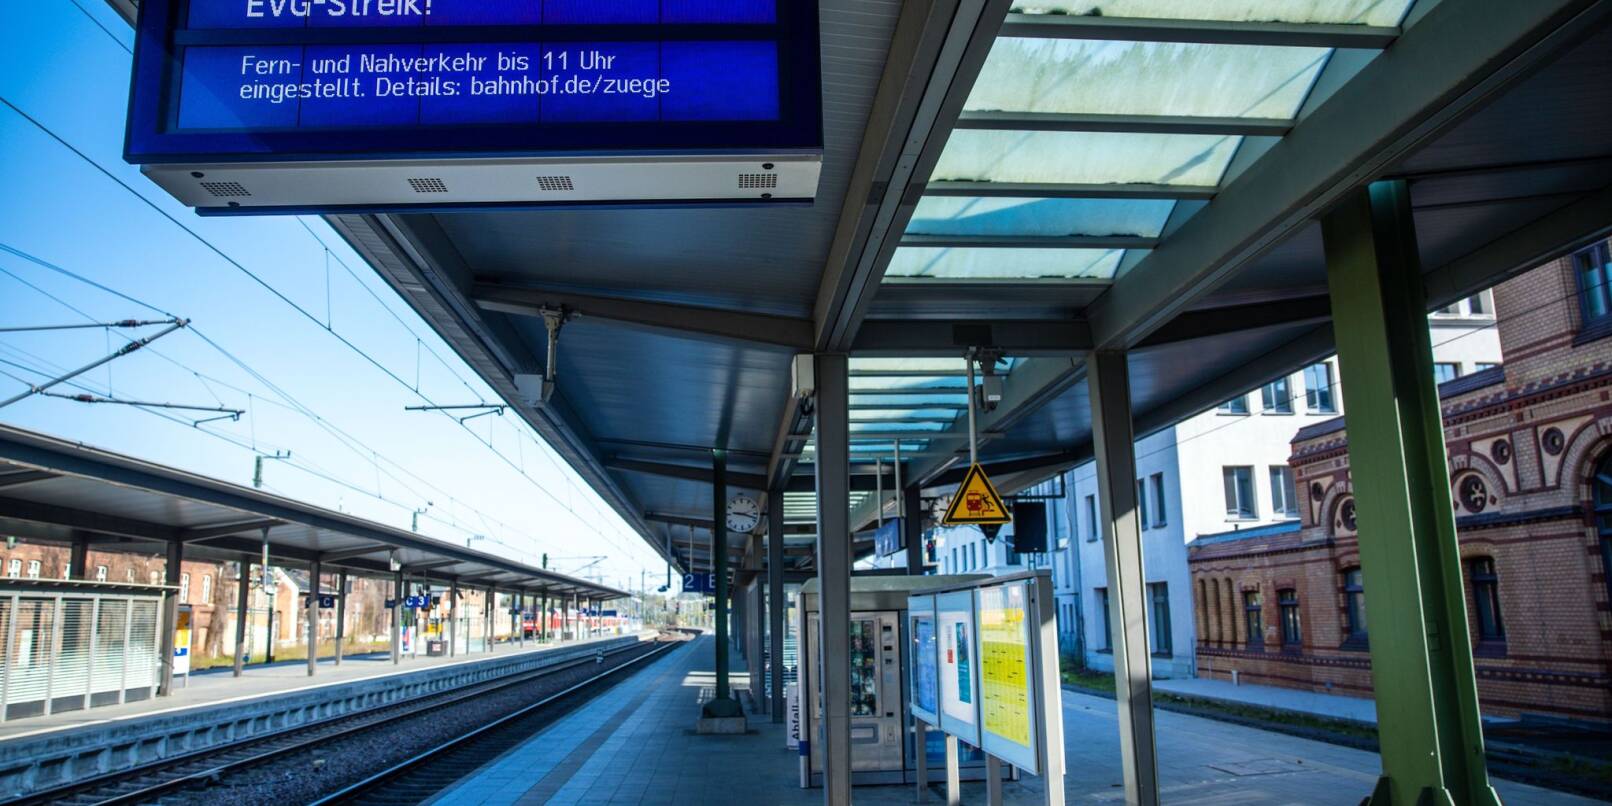 An der Anzeigetafel auf einem Bahnsteig des Hauptbahnhofs Schwerin wird der Schriftzug "EVG-Streik!" angezeigt.